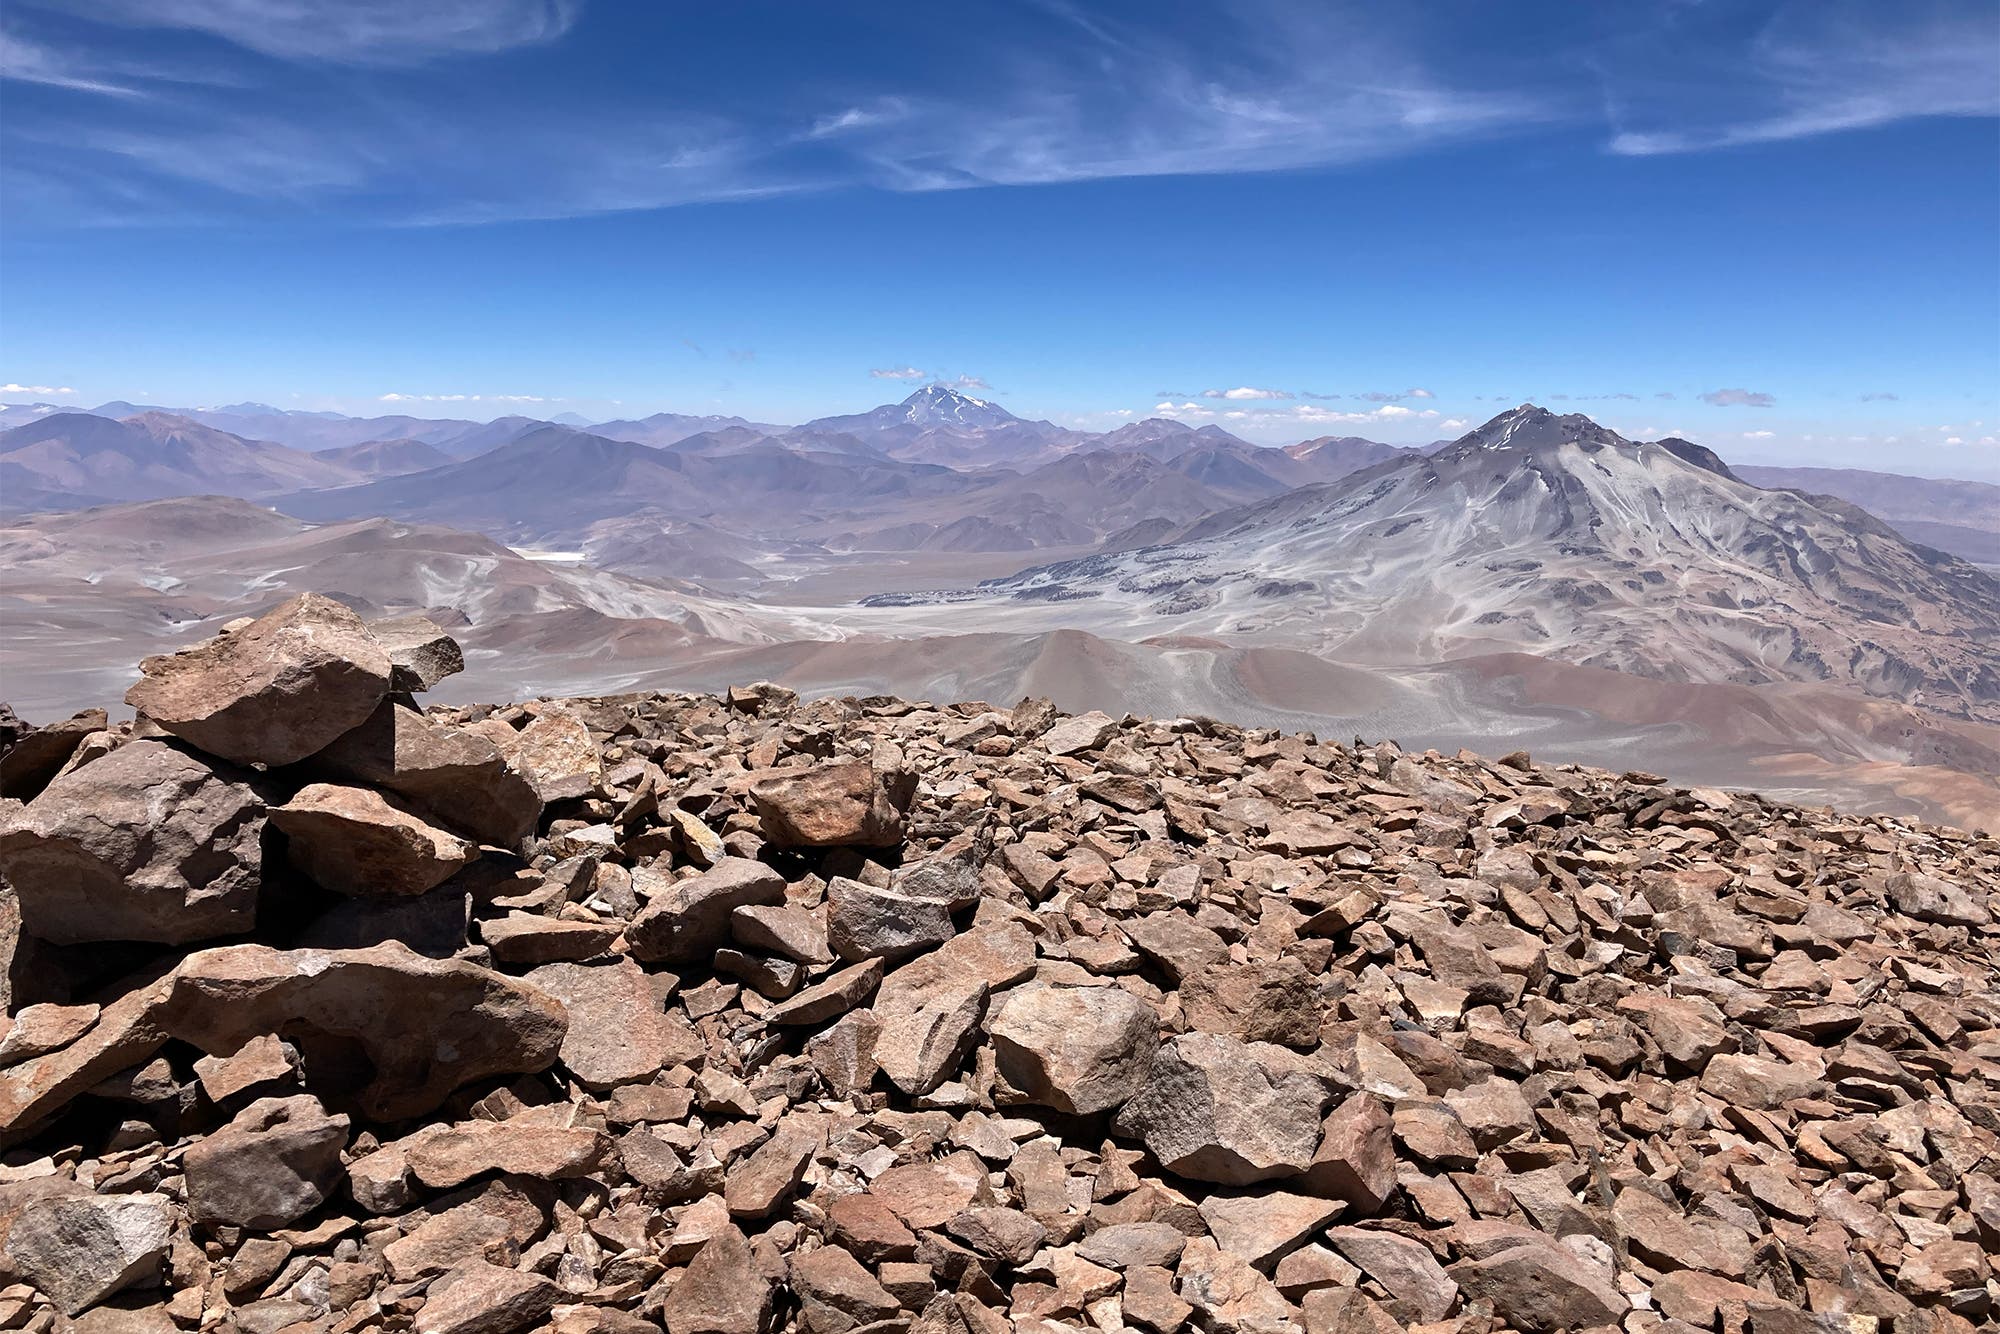 Panoramablick über die Vulkangipfel der Atacama: Im Vordergrund ist eine braune Geröllhalde, im Hintergrund sieht man einige Vulkane, der Himmel ist blau, der Rest weist unterschiedliche Brauntöne auf.